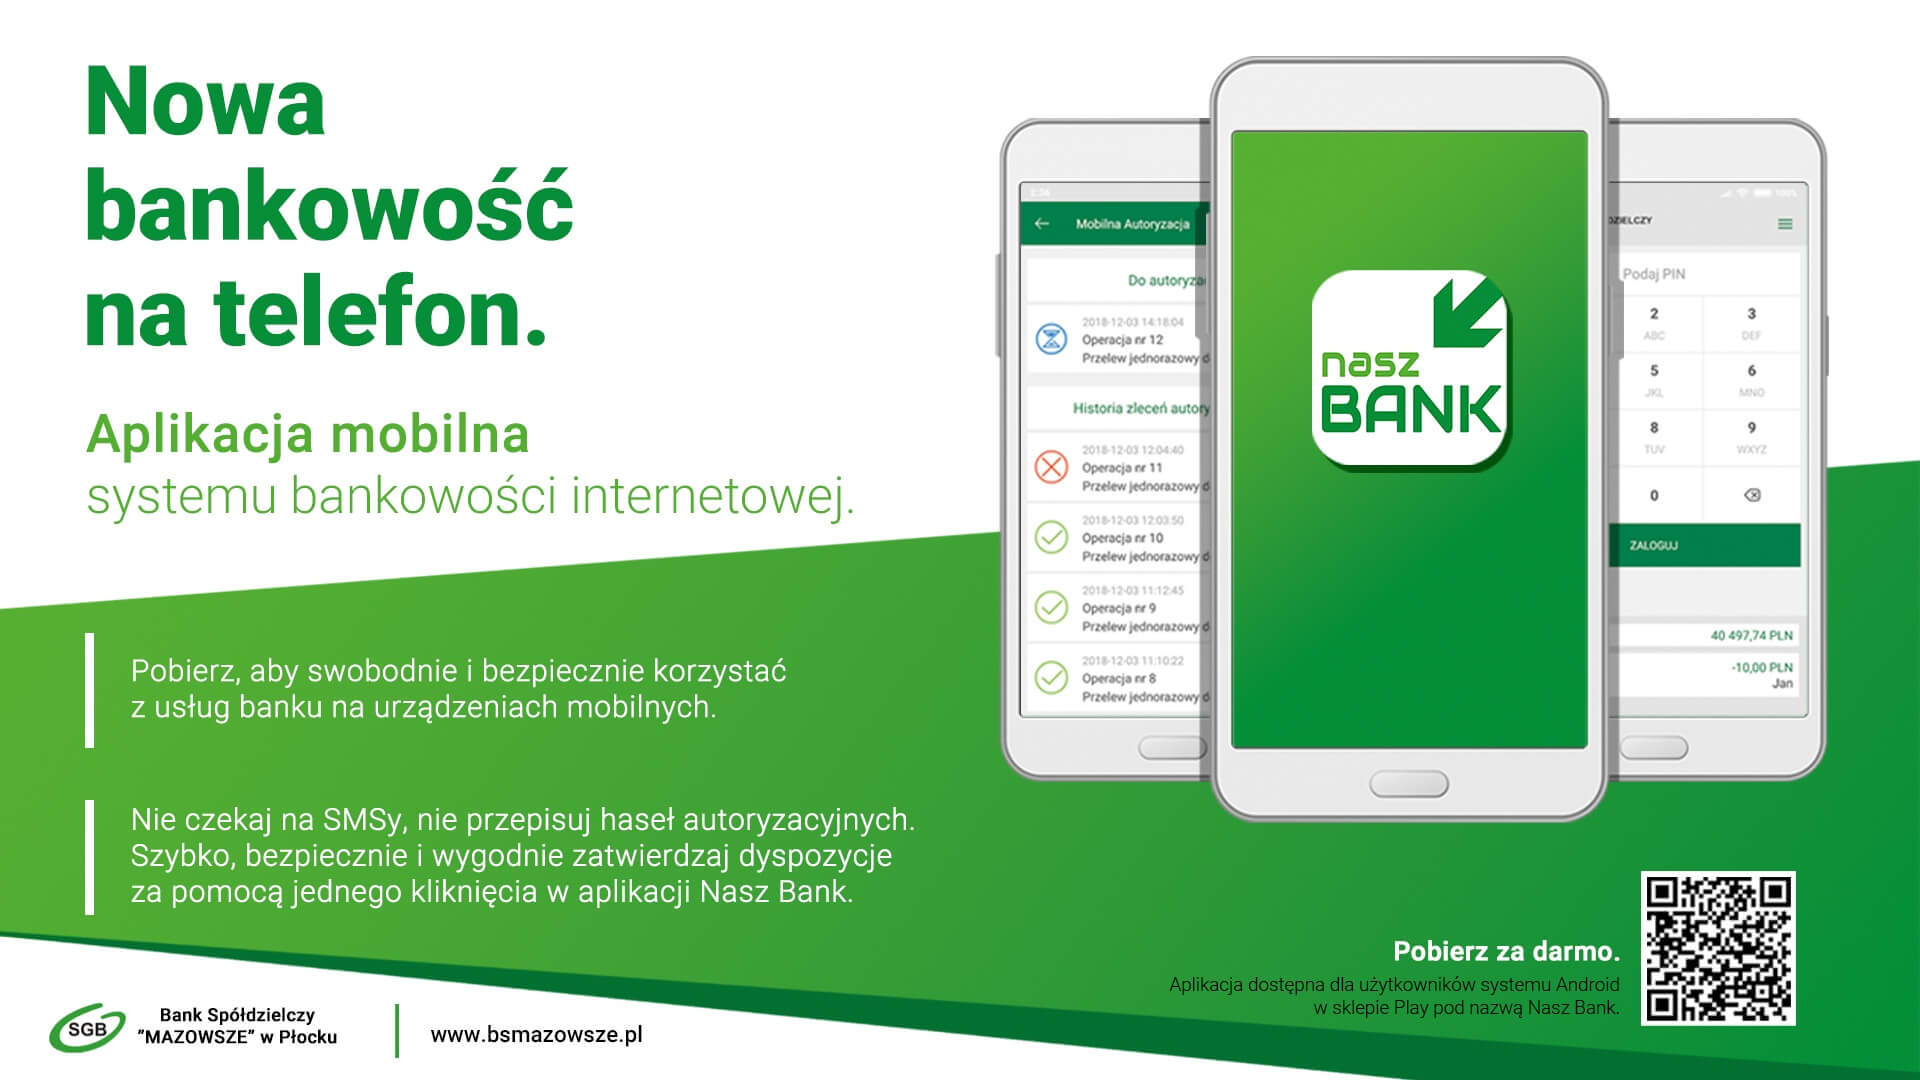 Aplikacja Nasz Bank